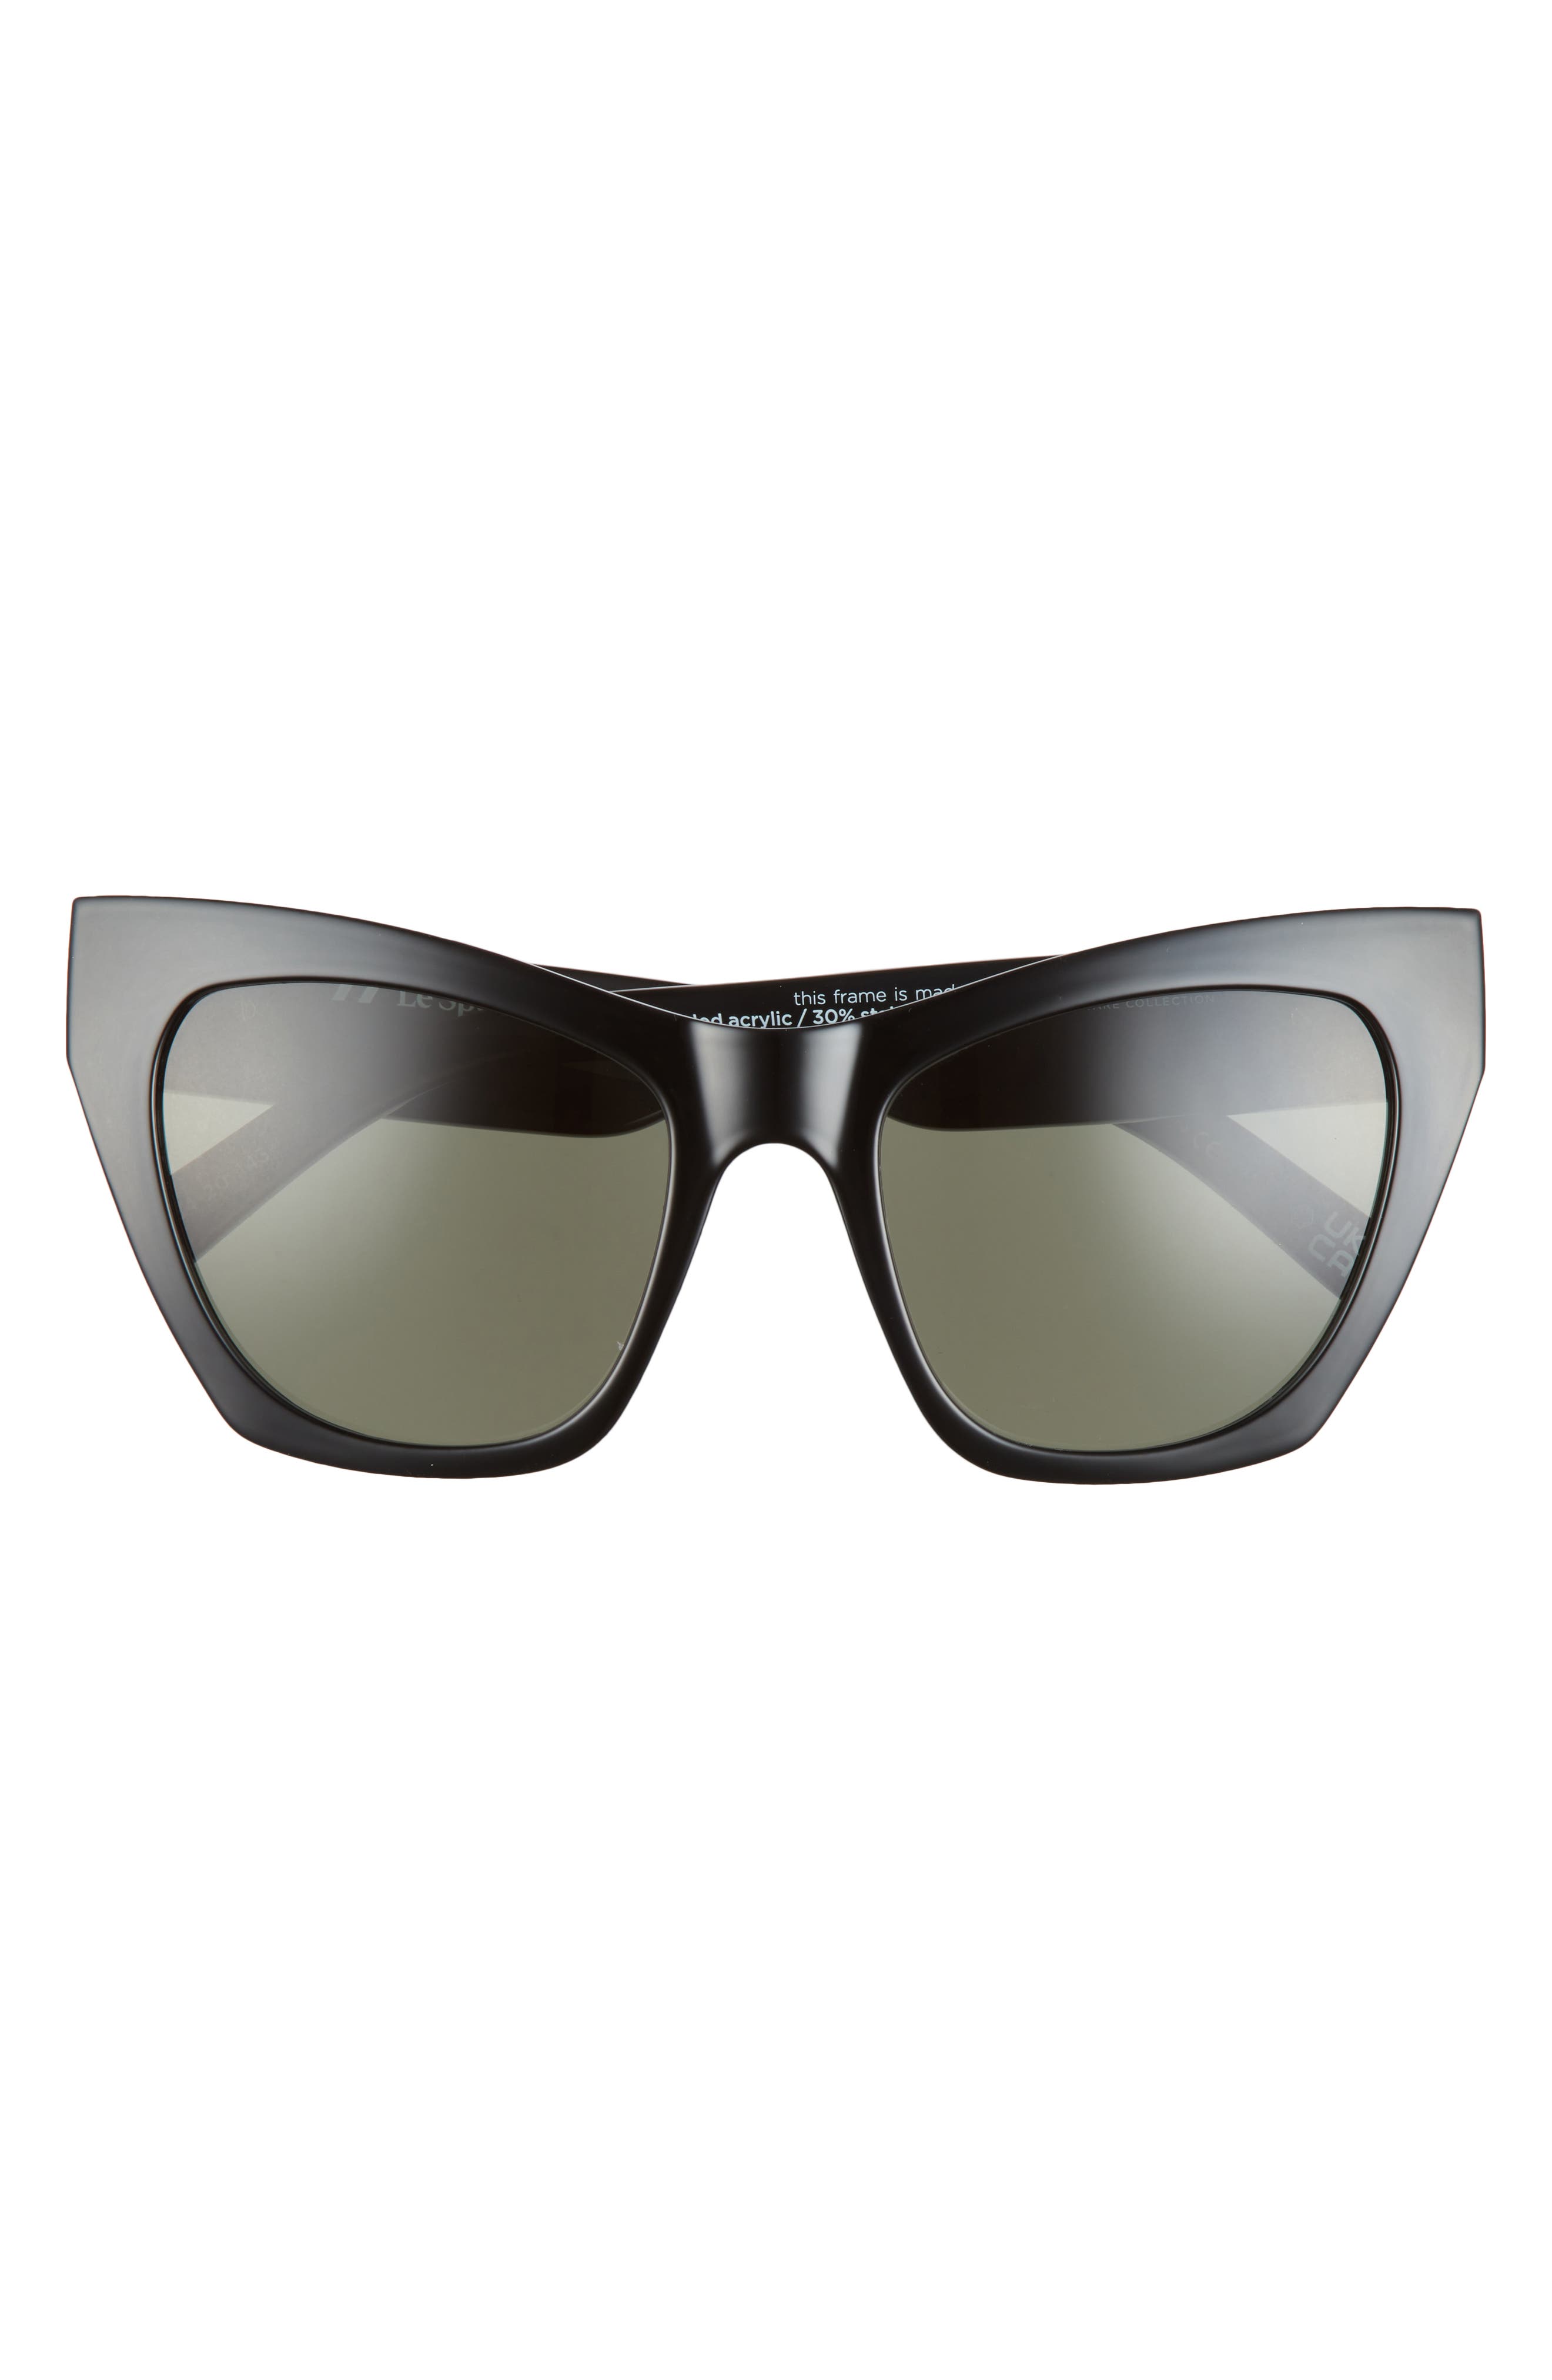 Le Specs So Sarplastic 54mm Cat Eye Sunglasses in Dark Grey /Khaki Mono at Nordstrom